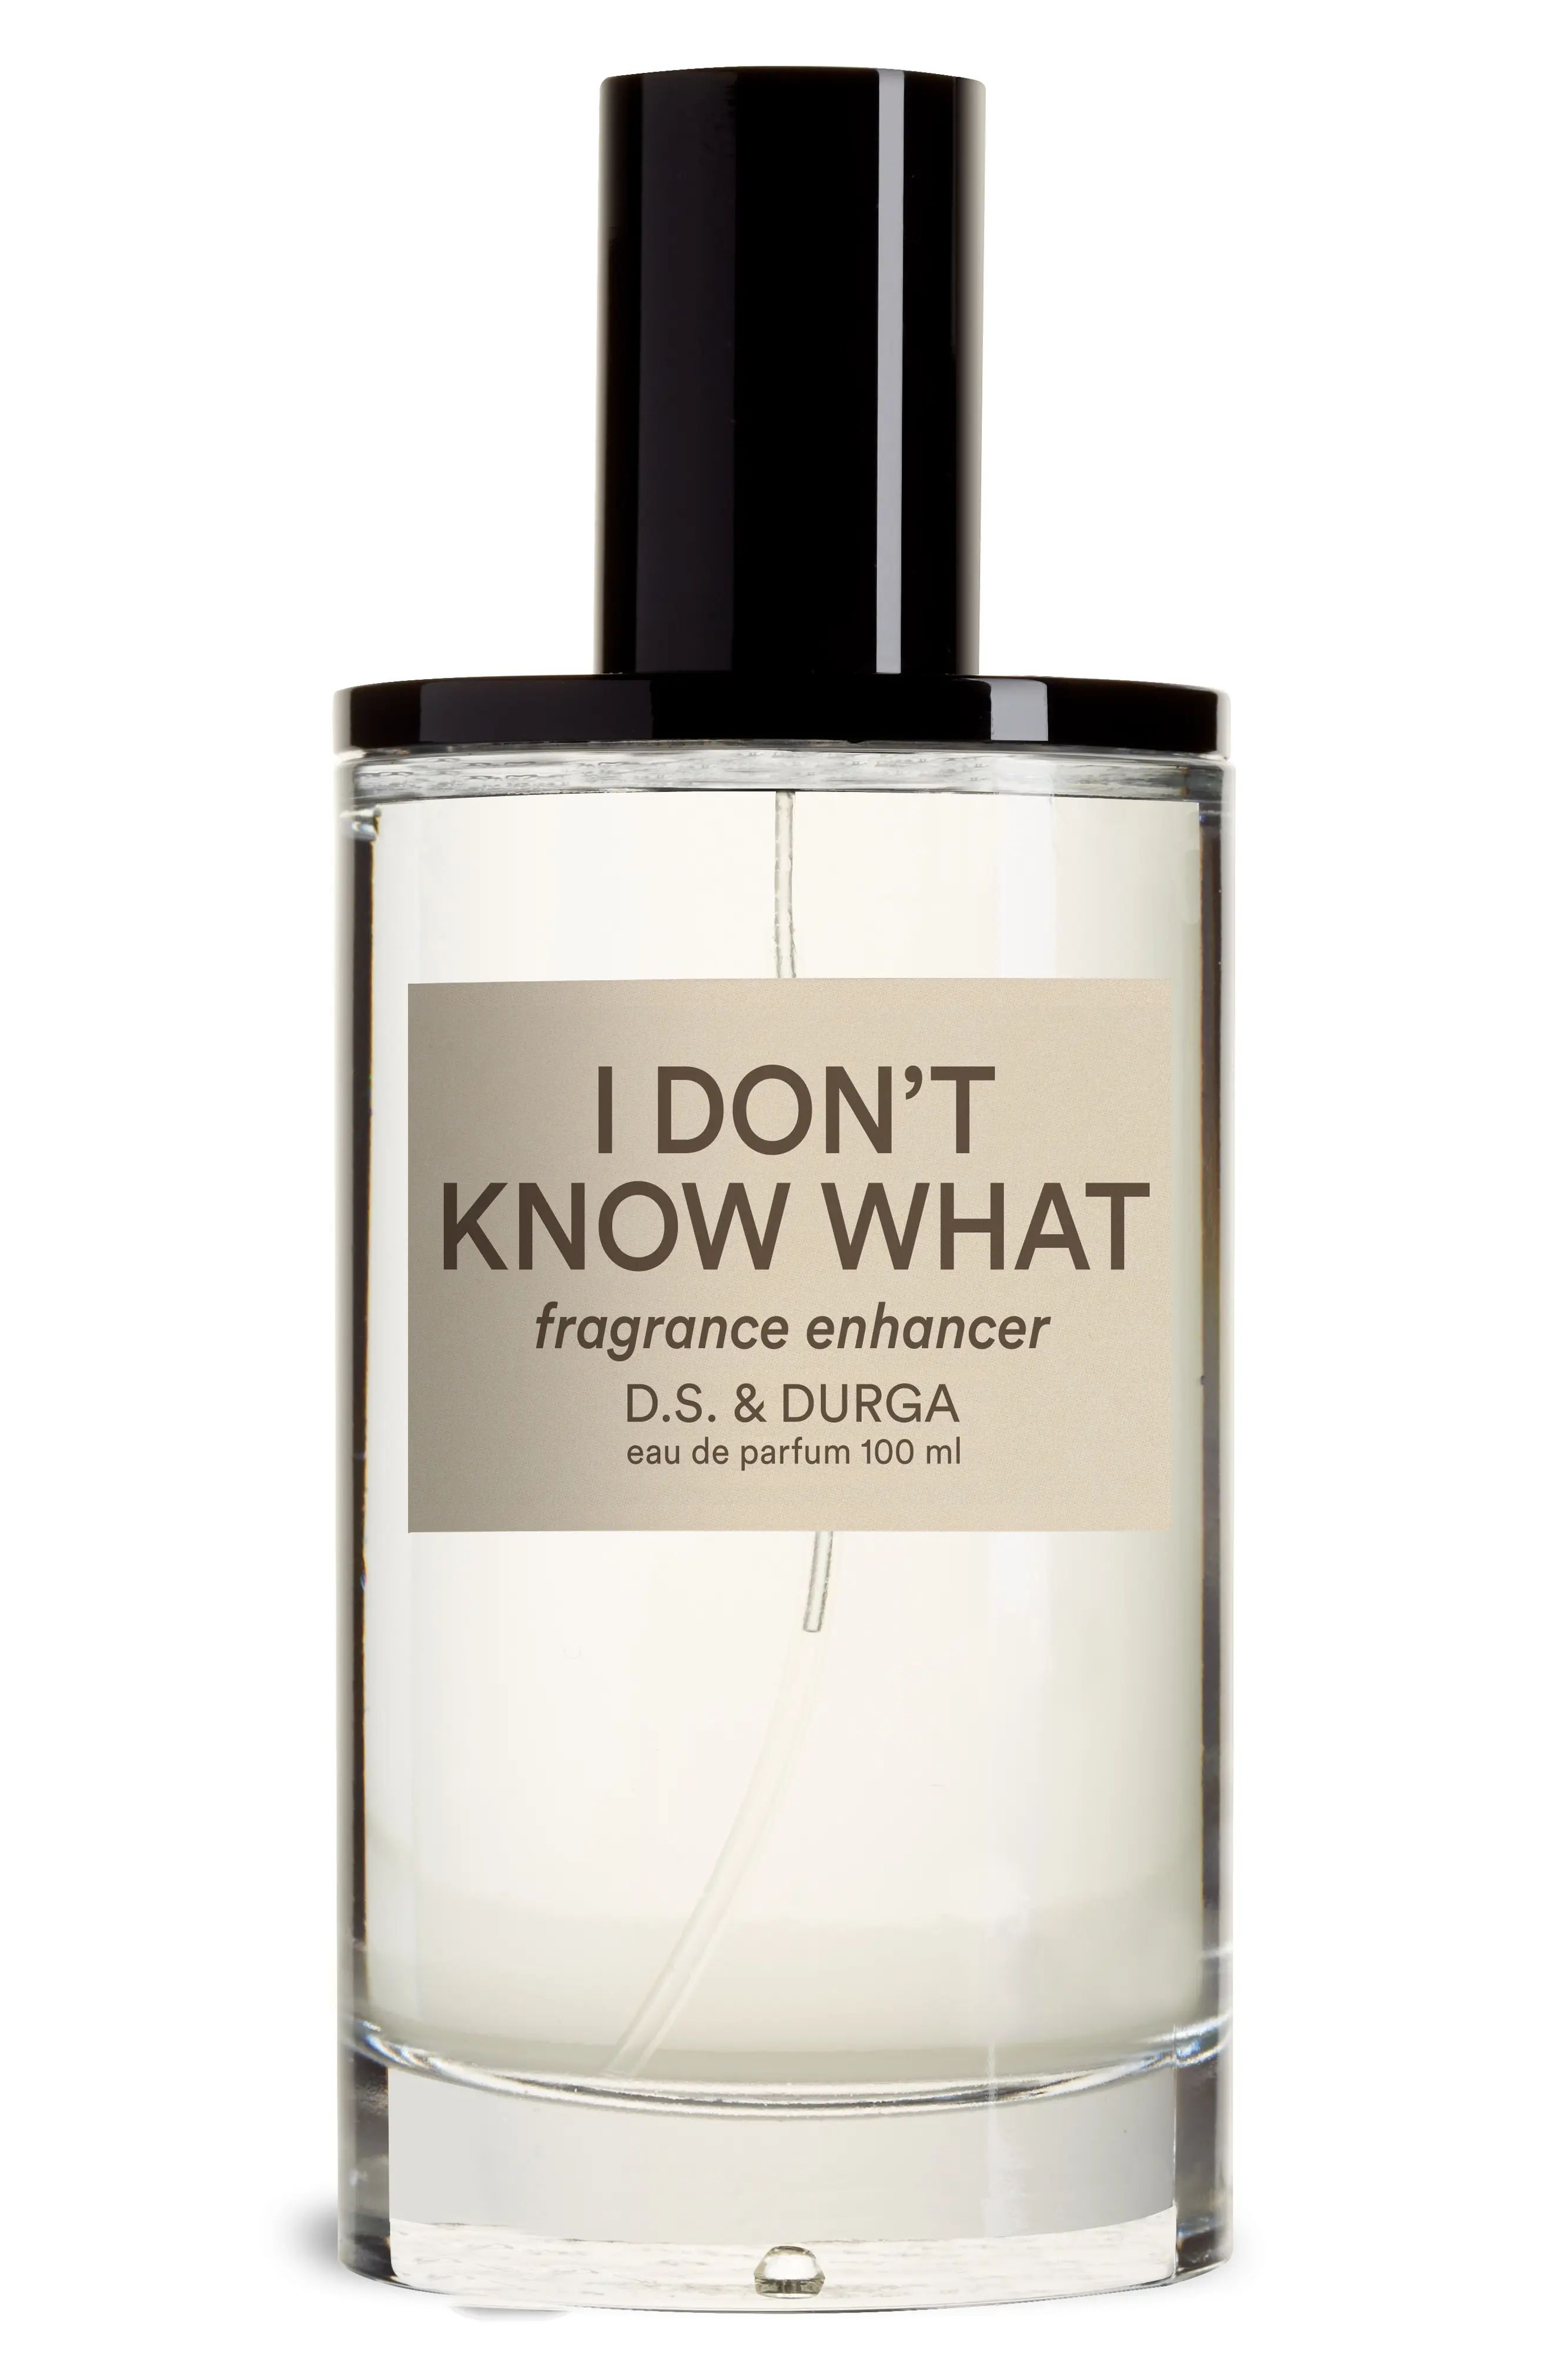 D.S. & Durga I Don't Know What Fragrance Enhancer at Nordstrom, Size 3.3 Oz | Nordstrom